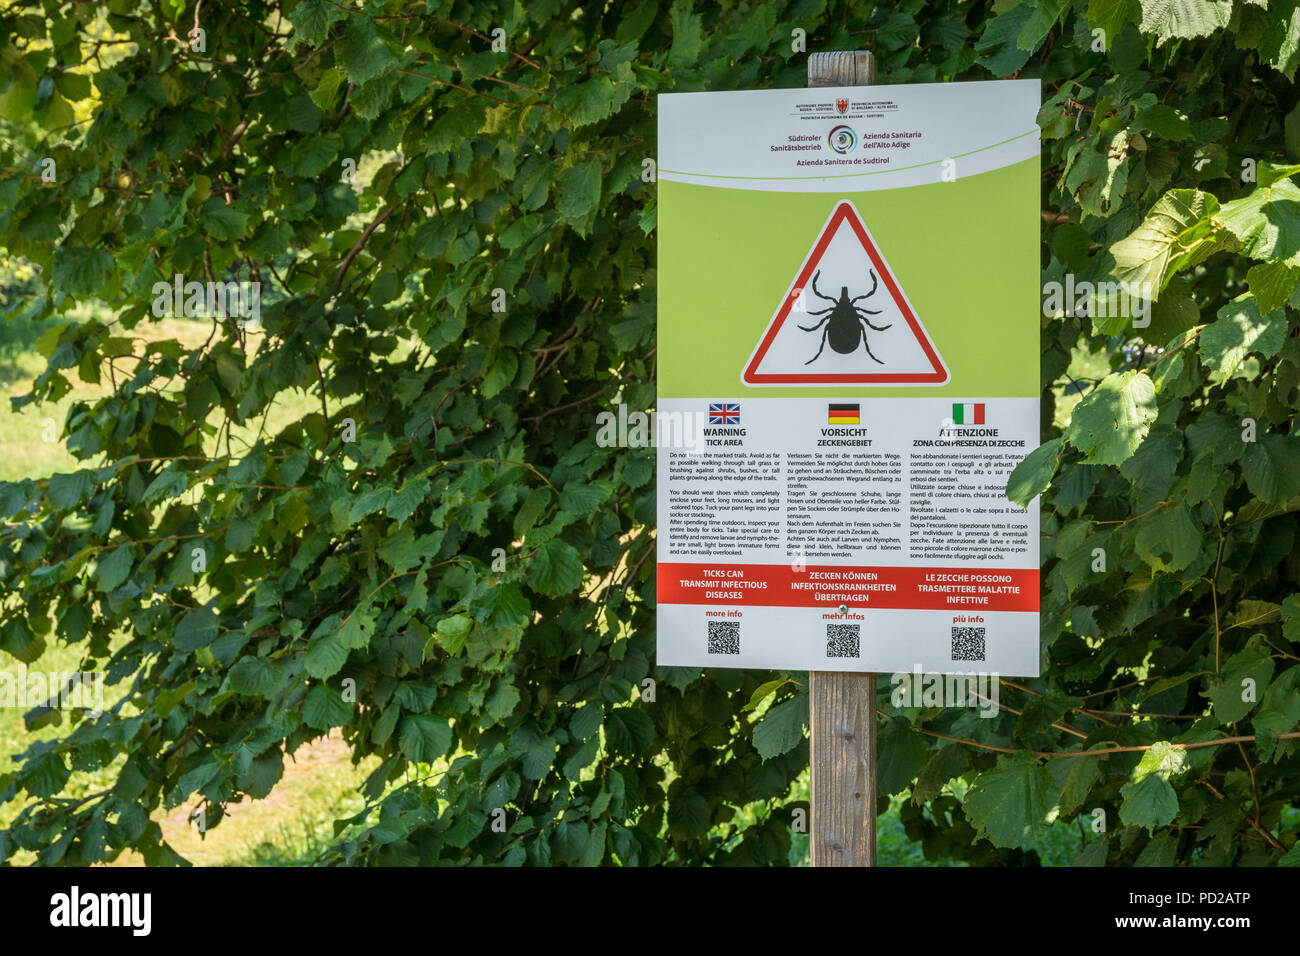 Segnale di avvertimento "avvertimento area tick' in un parco naturale dell Alto Adige, Italia - Trentino Alto Adige. Foto Stock